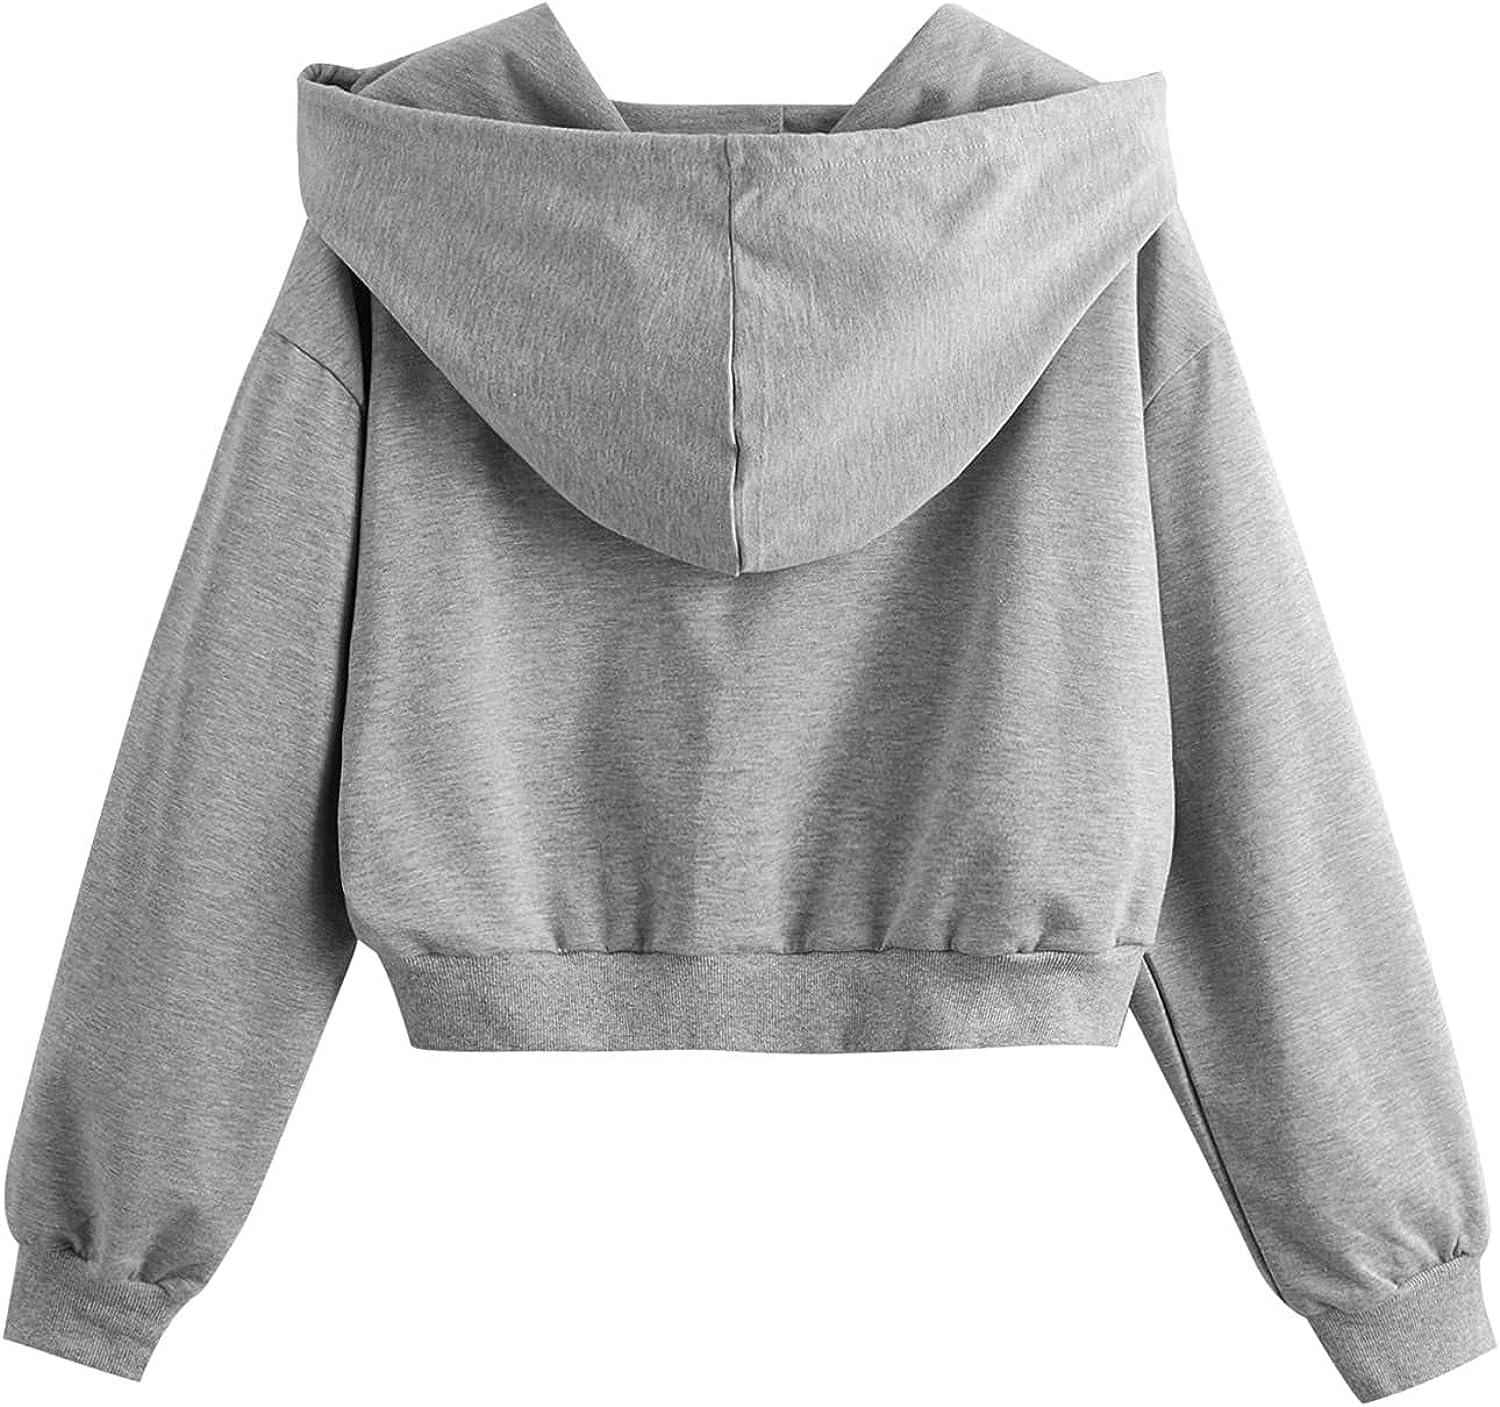 Kids Teen Girls Crop Tops Tie-Dye Hooded Long Sleeve Pullover Sweatshirts  Tops